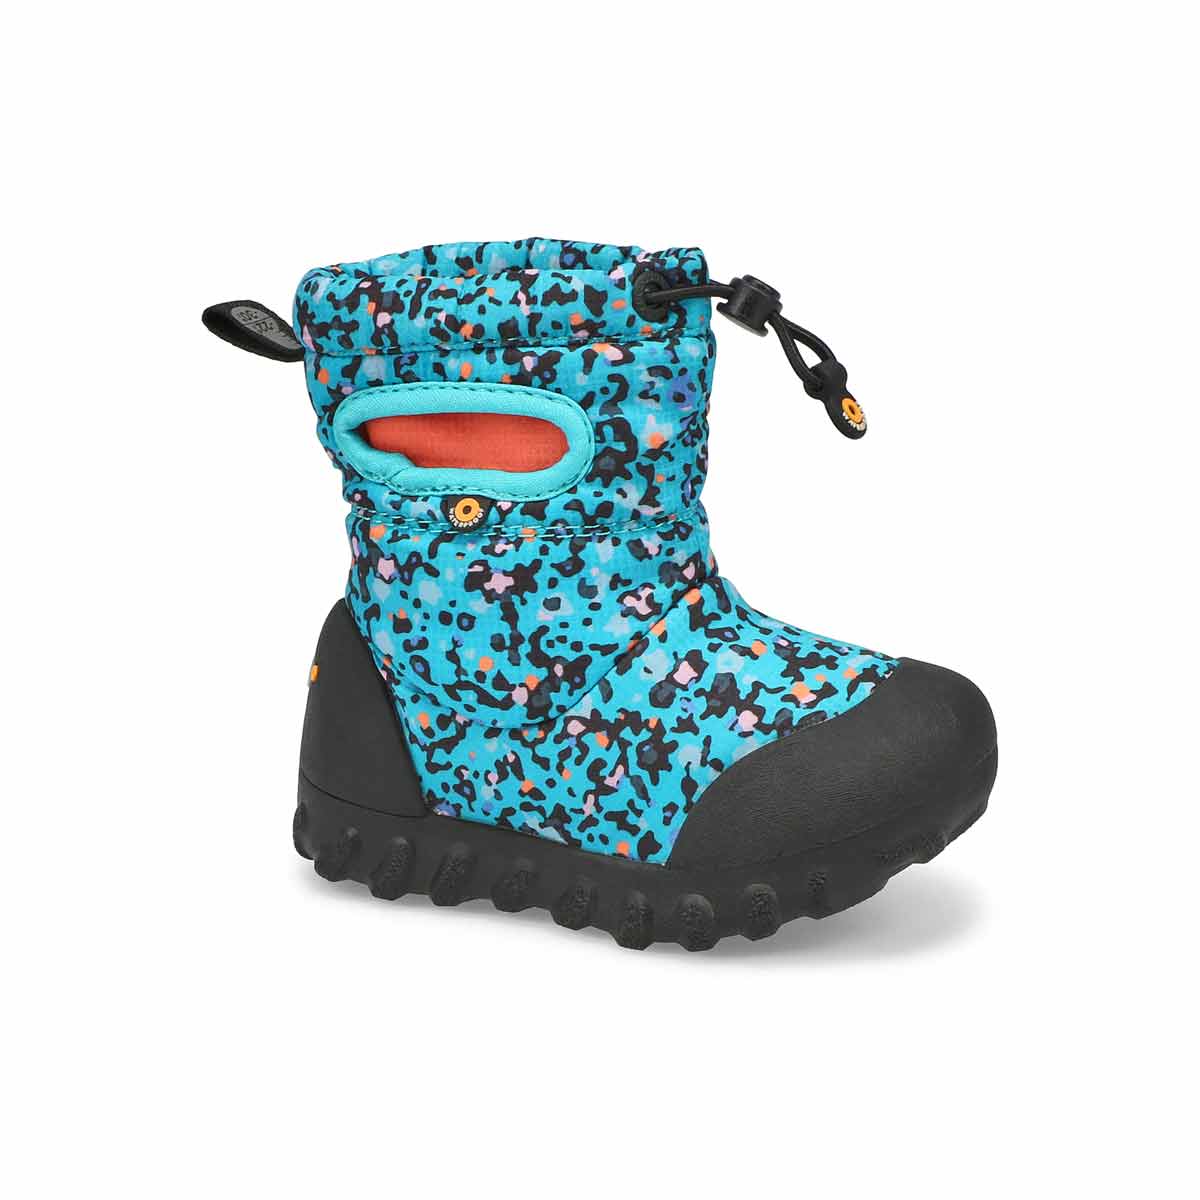 Infants' B-Moc Snow Waterproof Boot - Blue Multi